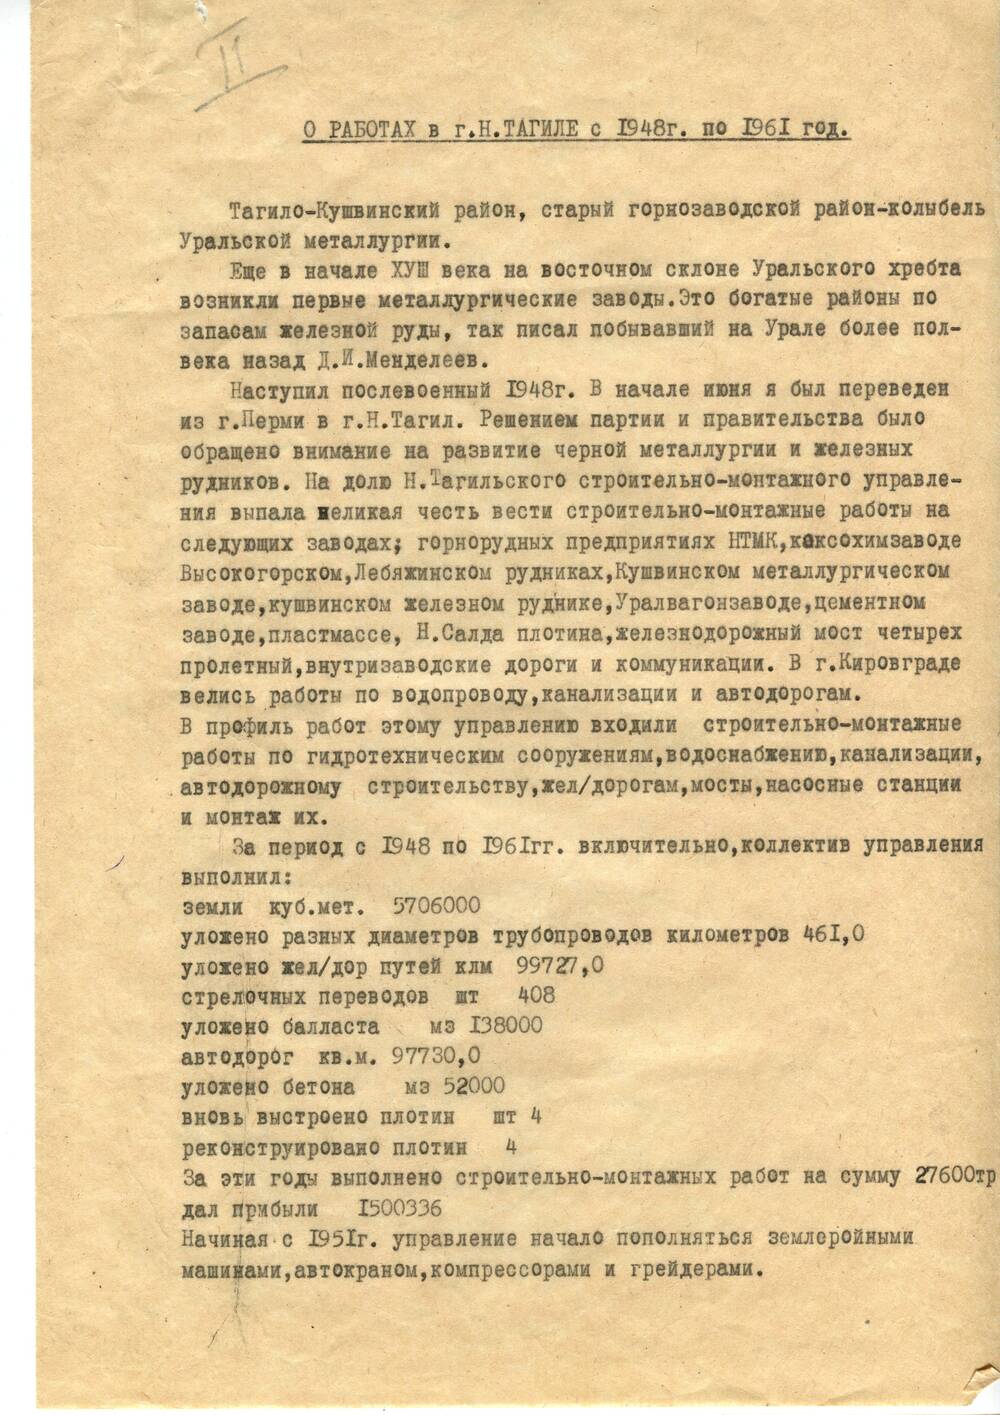 Воспоминания Тофило Арсения Васильевича о работе на Урале и в Нижнем Тагиле с 1948 г. по 1961 г. 12 декабря 1967 г.